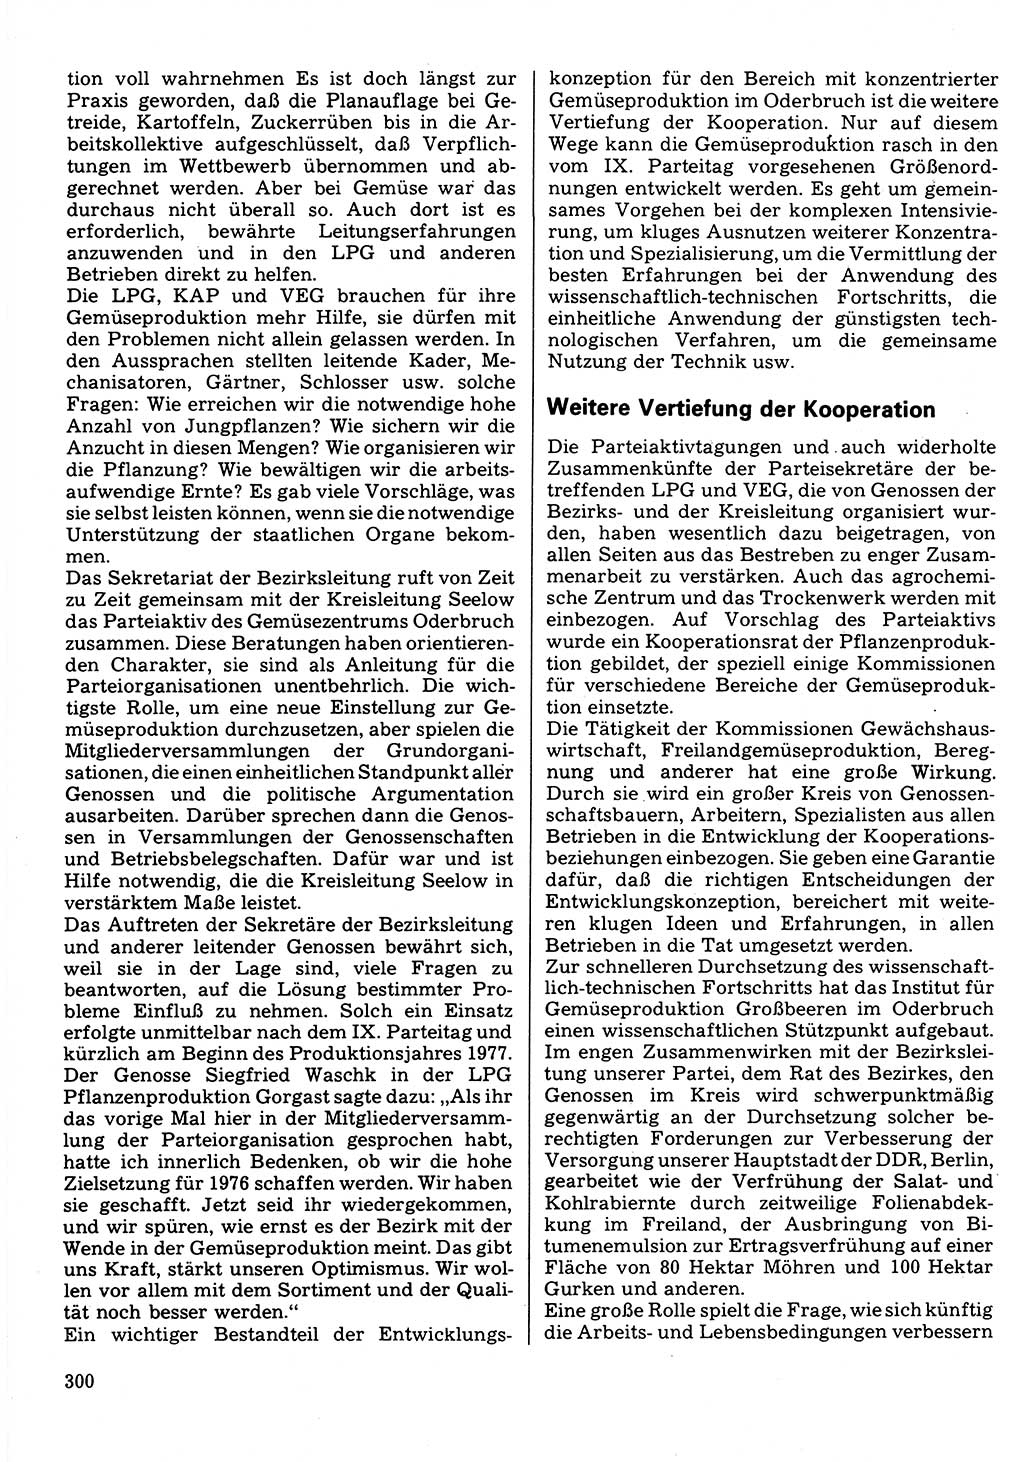 Neuer Weg (NW), Organ des Zentralkomitees (ZK) der SED (Sozialistische Einheitspartei Deutschlands) für Fragen des Parteilebens, 32. Jahrgang [Deutsche Demokratische Republik (DDR)] 1977, Seite 300 (NW ZK SED DDR 1977, S. 300)